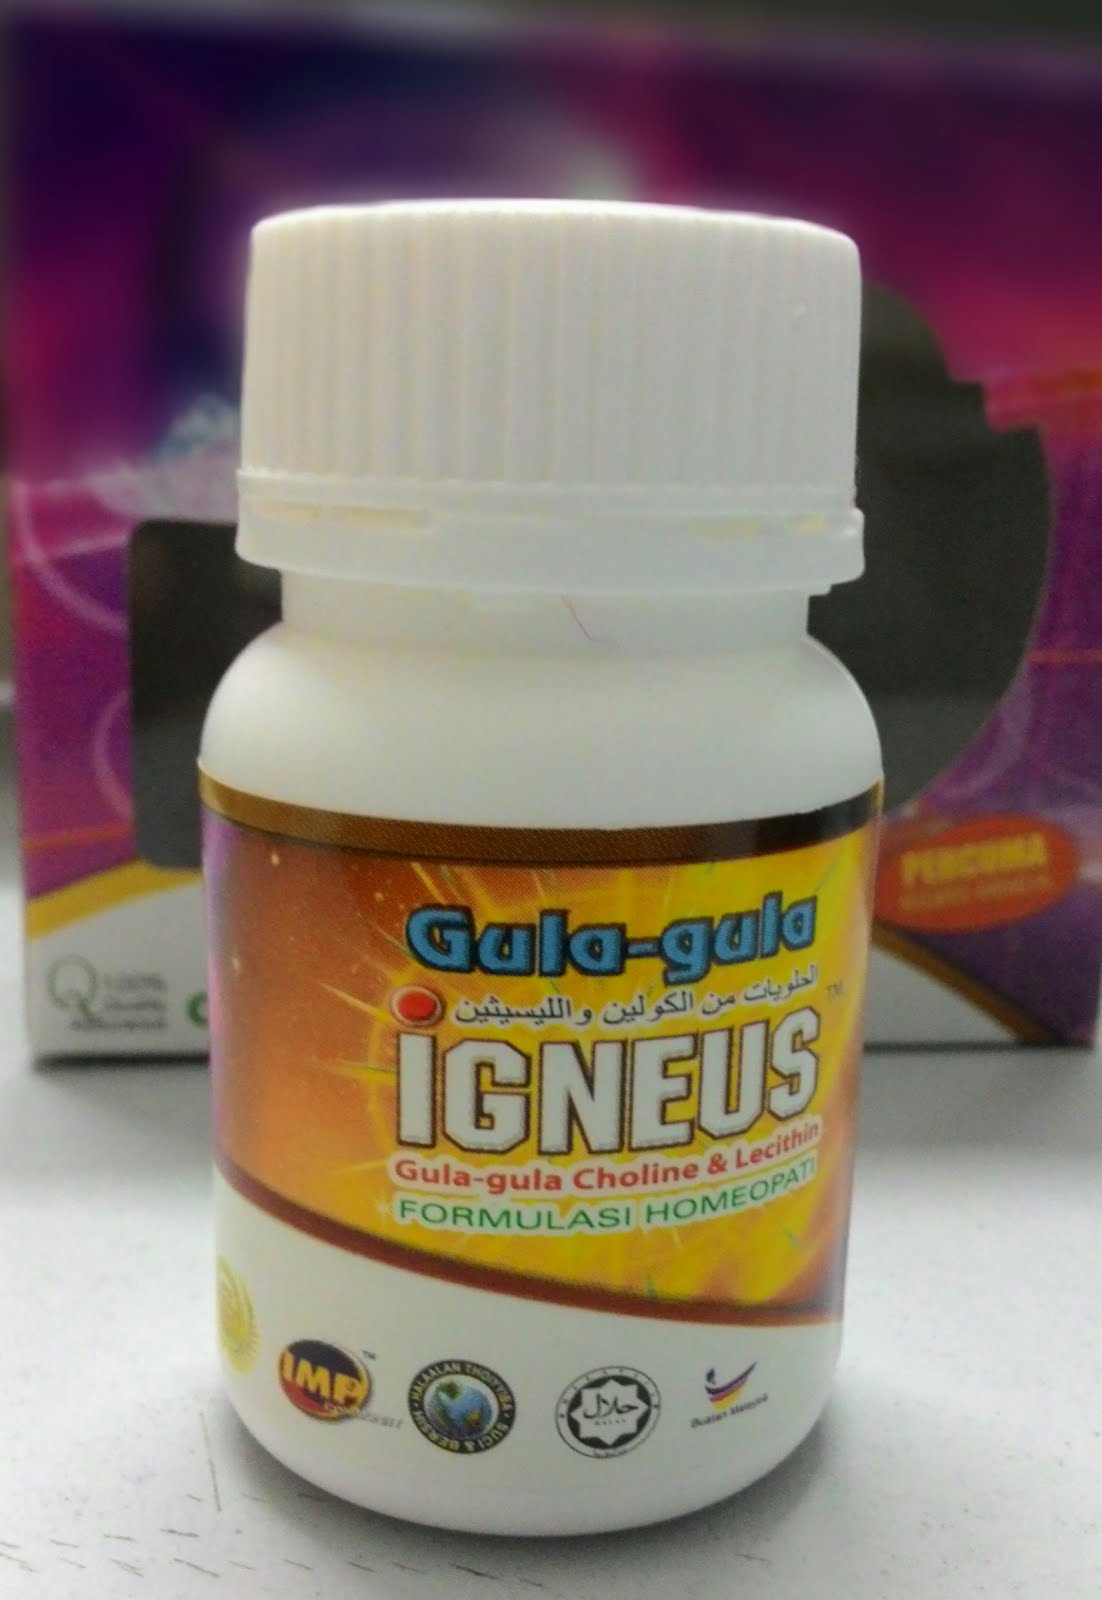 IGneus/Gula-gula gneus